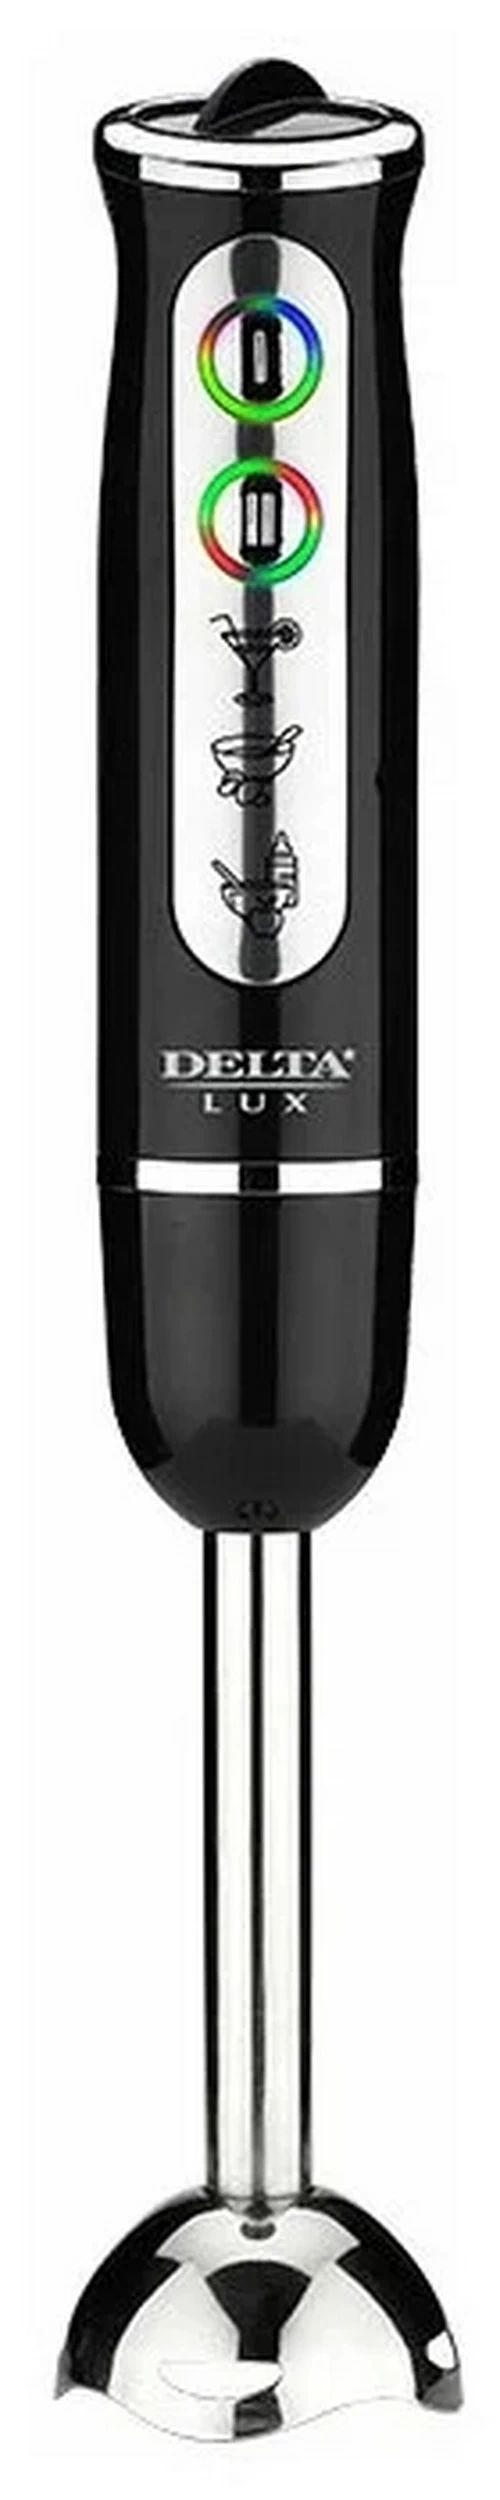 Погружной блендер Delta Lux DL-7039 черный